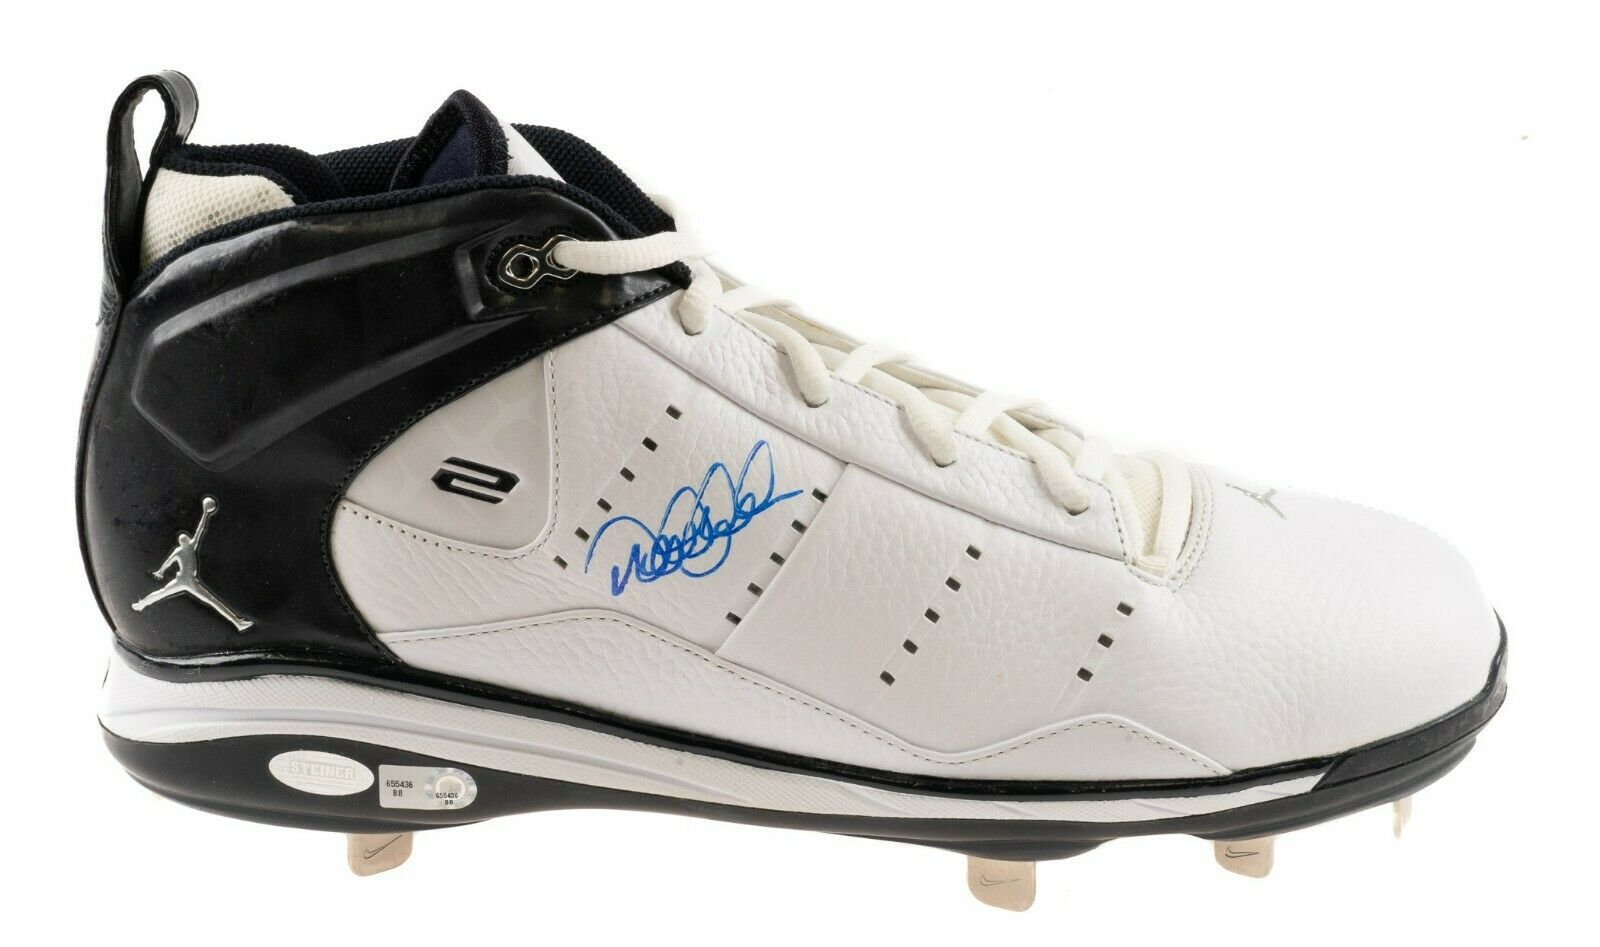 MLB Derek Jeter Signed Cleats & Shoes, Collectible Derek Jeter Signed  Cleats & Shoes